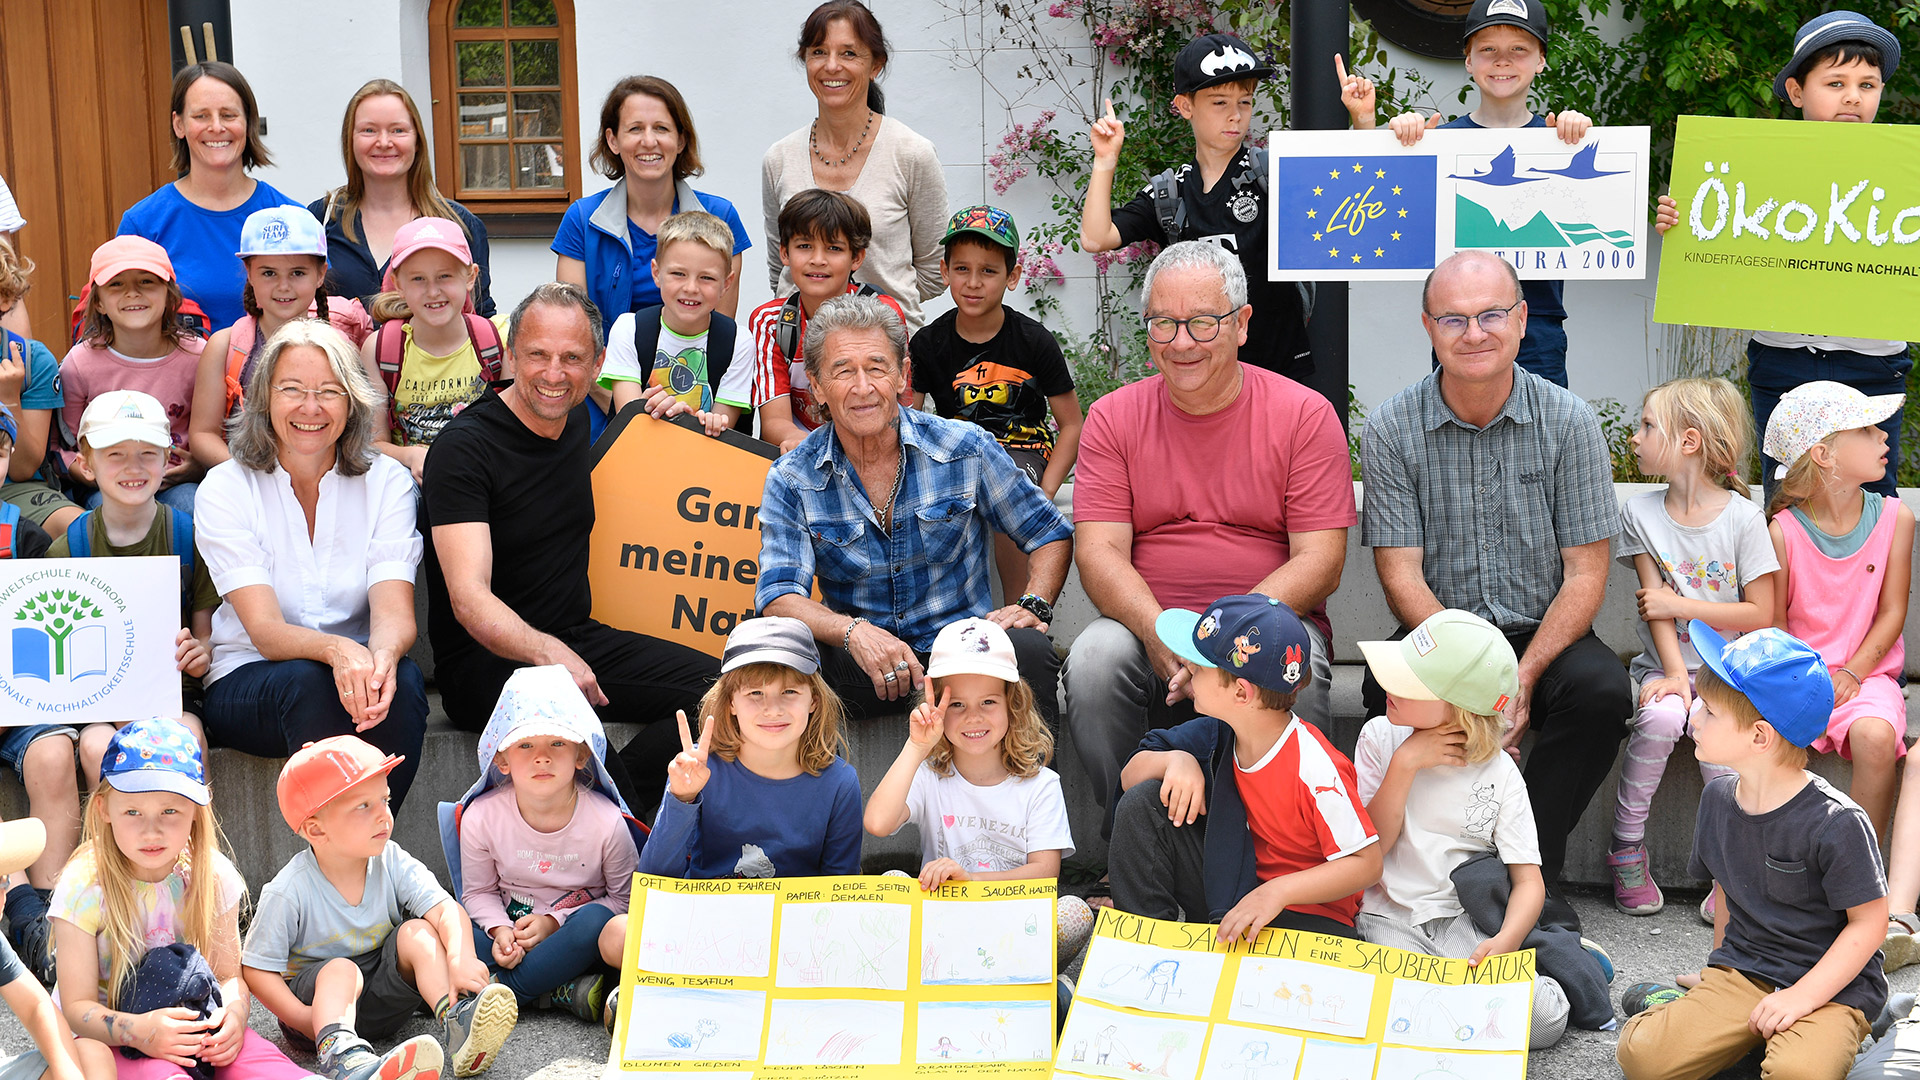 ÖkoKids und Umweltschule treffen Natura 2000-Botschafter Peter Maffay